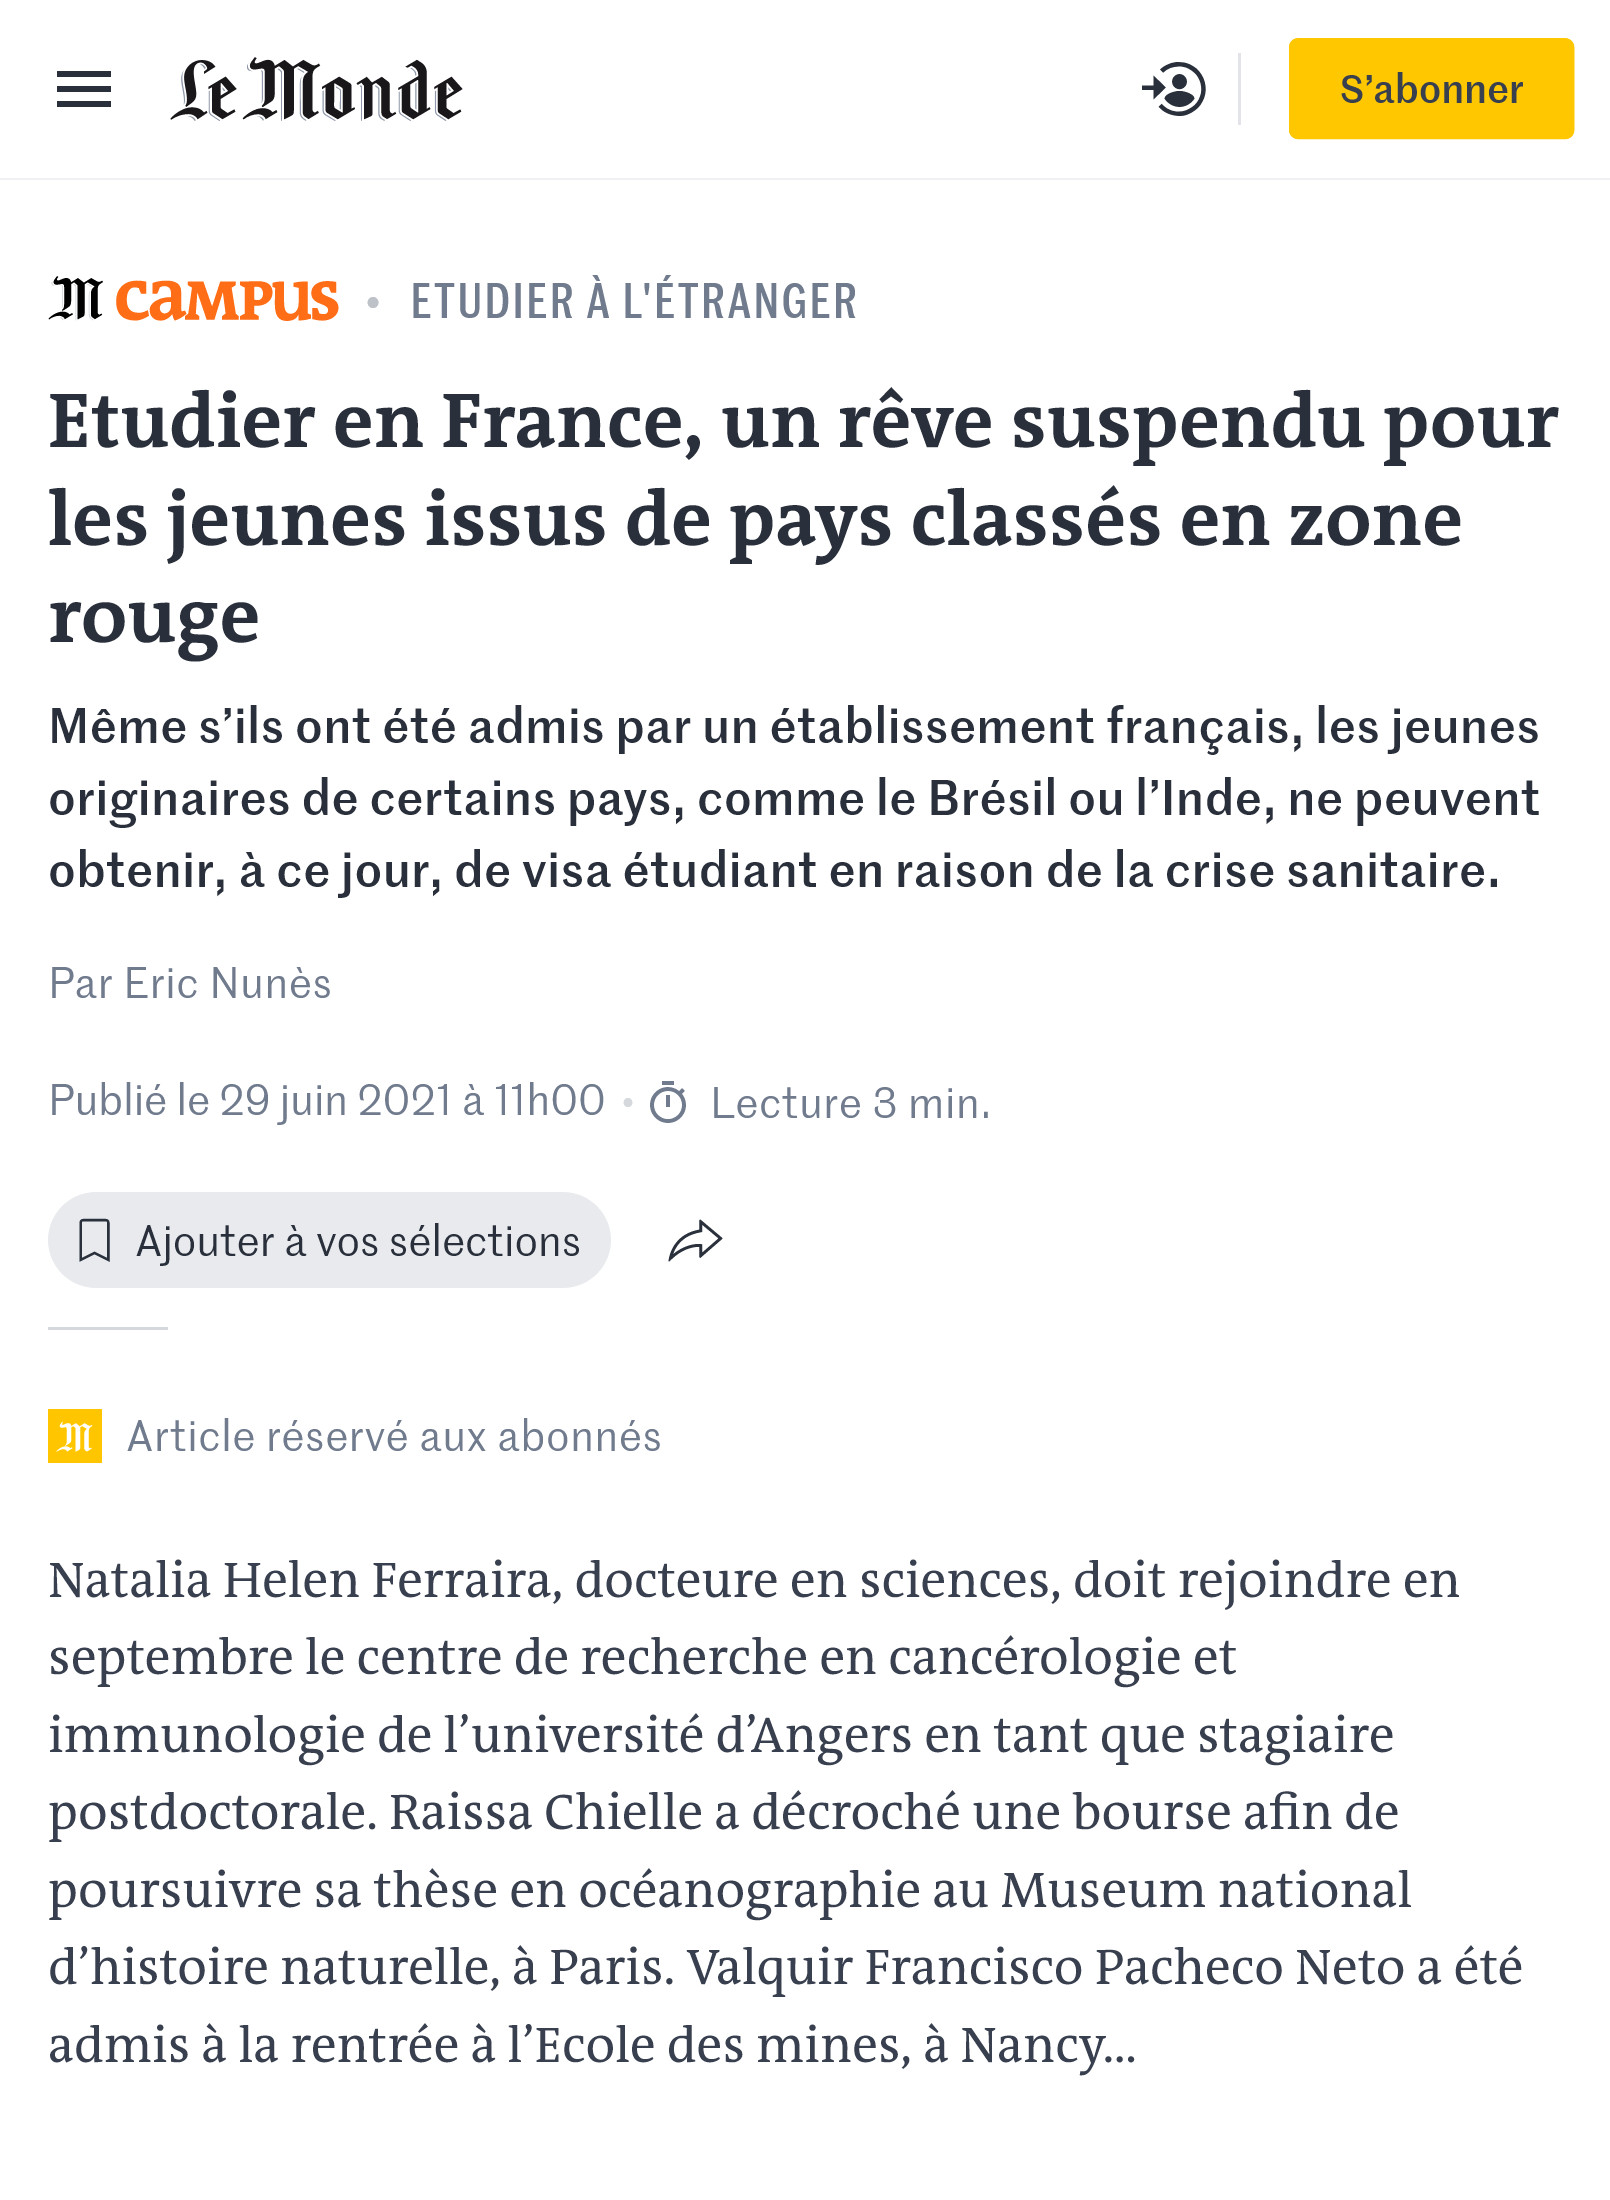 Статьи французских газет о студентах из «красных зон». Источник: lemonde.fr